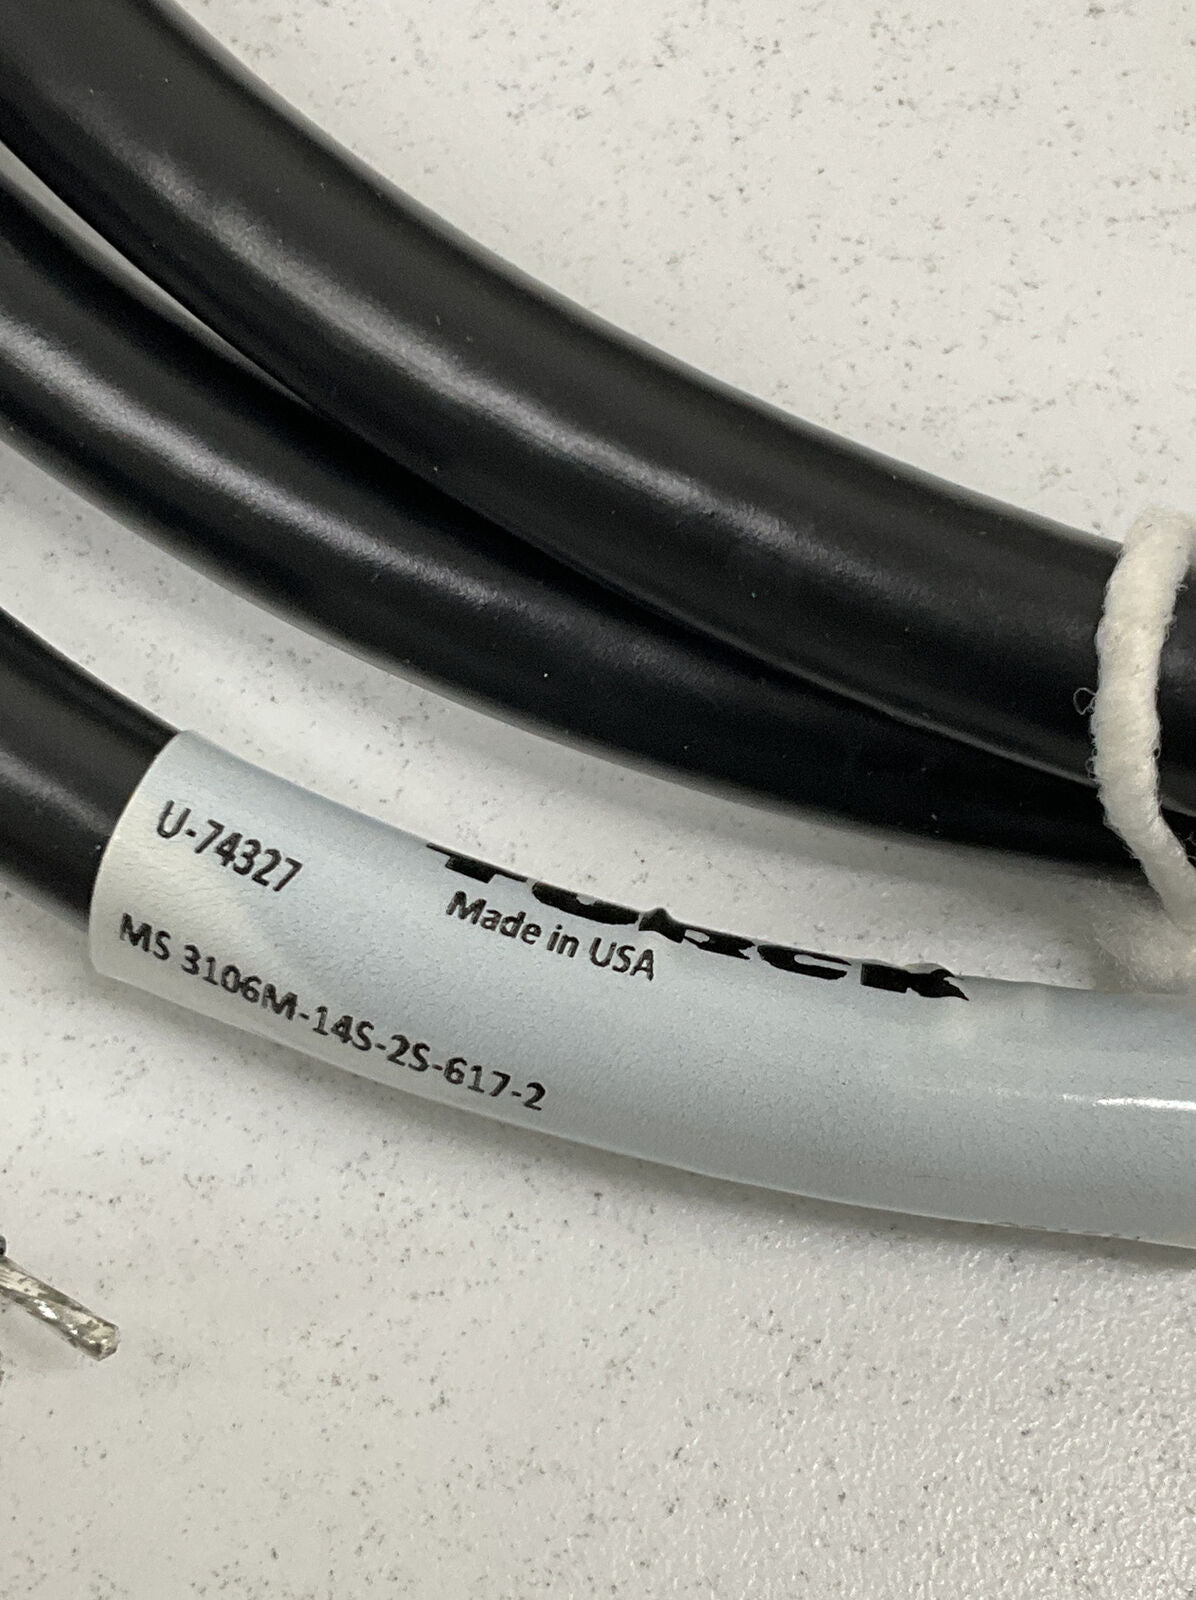 Turck MS 3106M-14S-2S-617-2 / U74327 Cordset Cable (CBL120) - 0